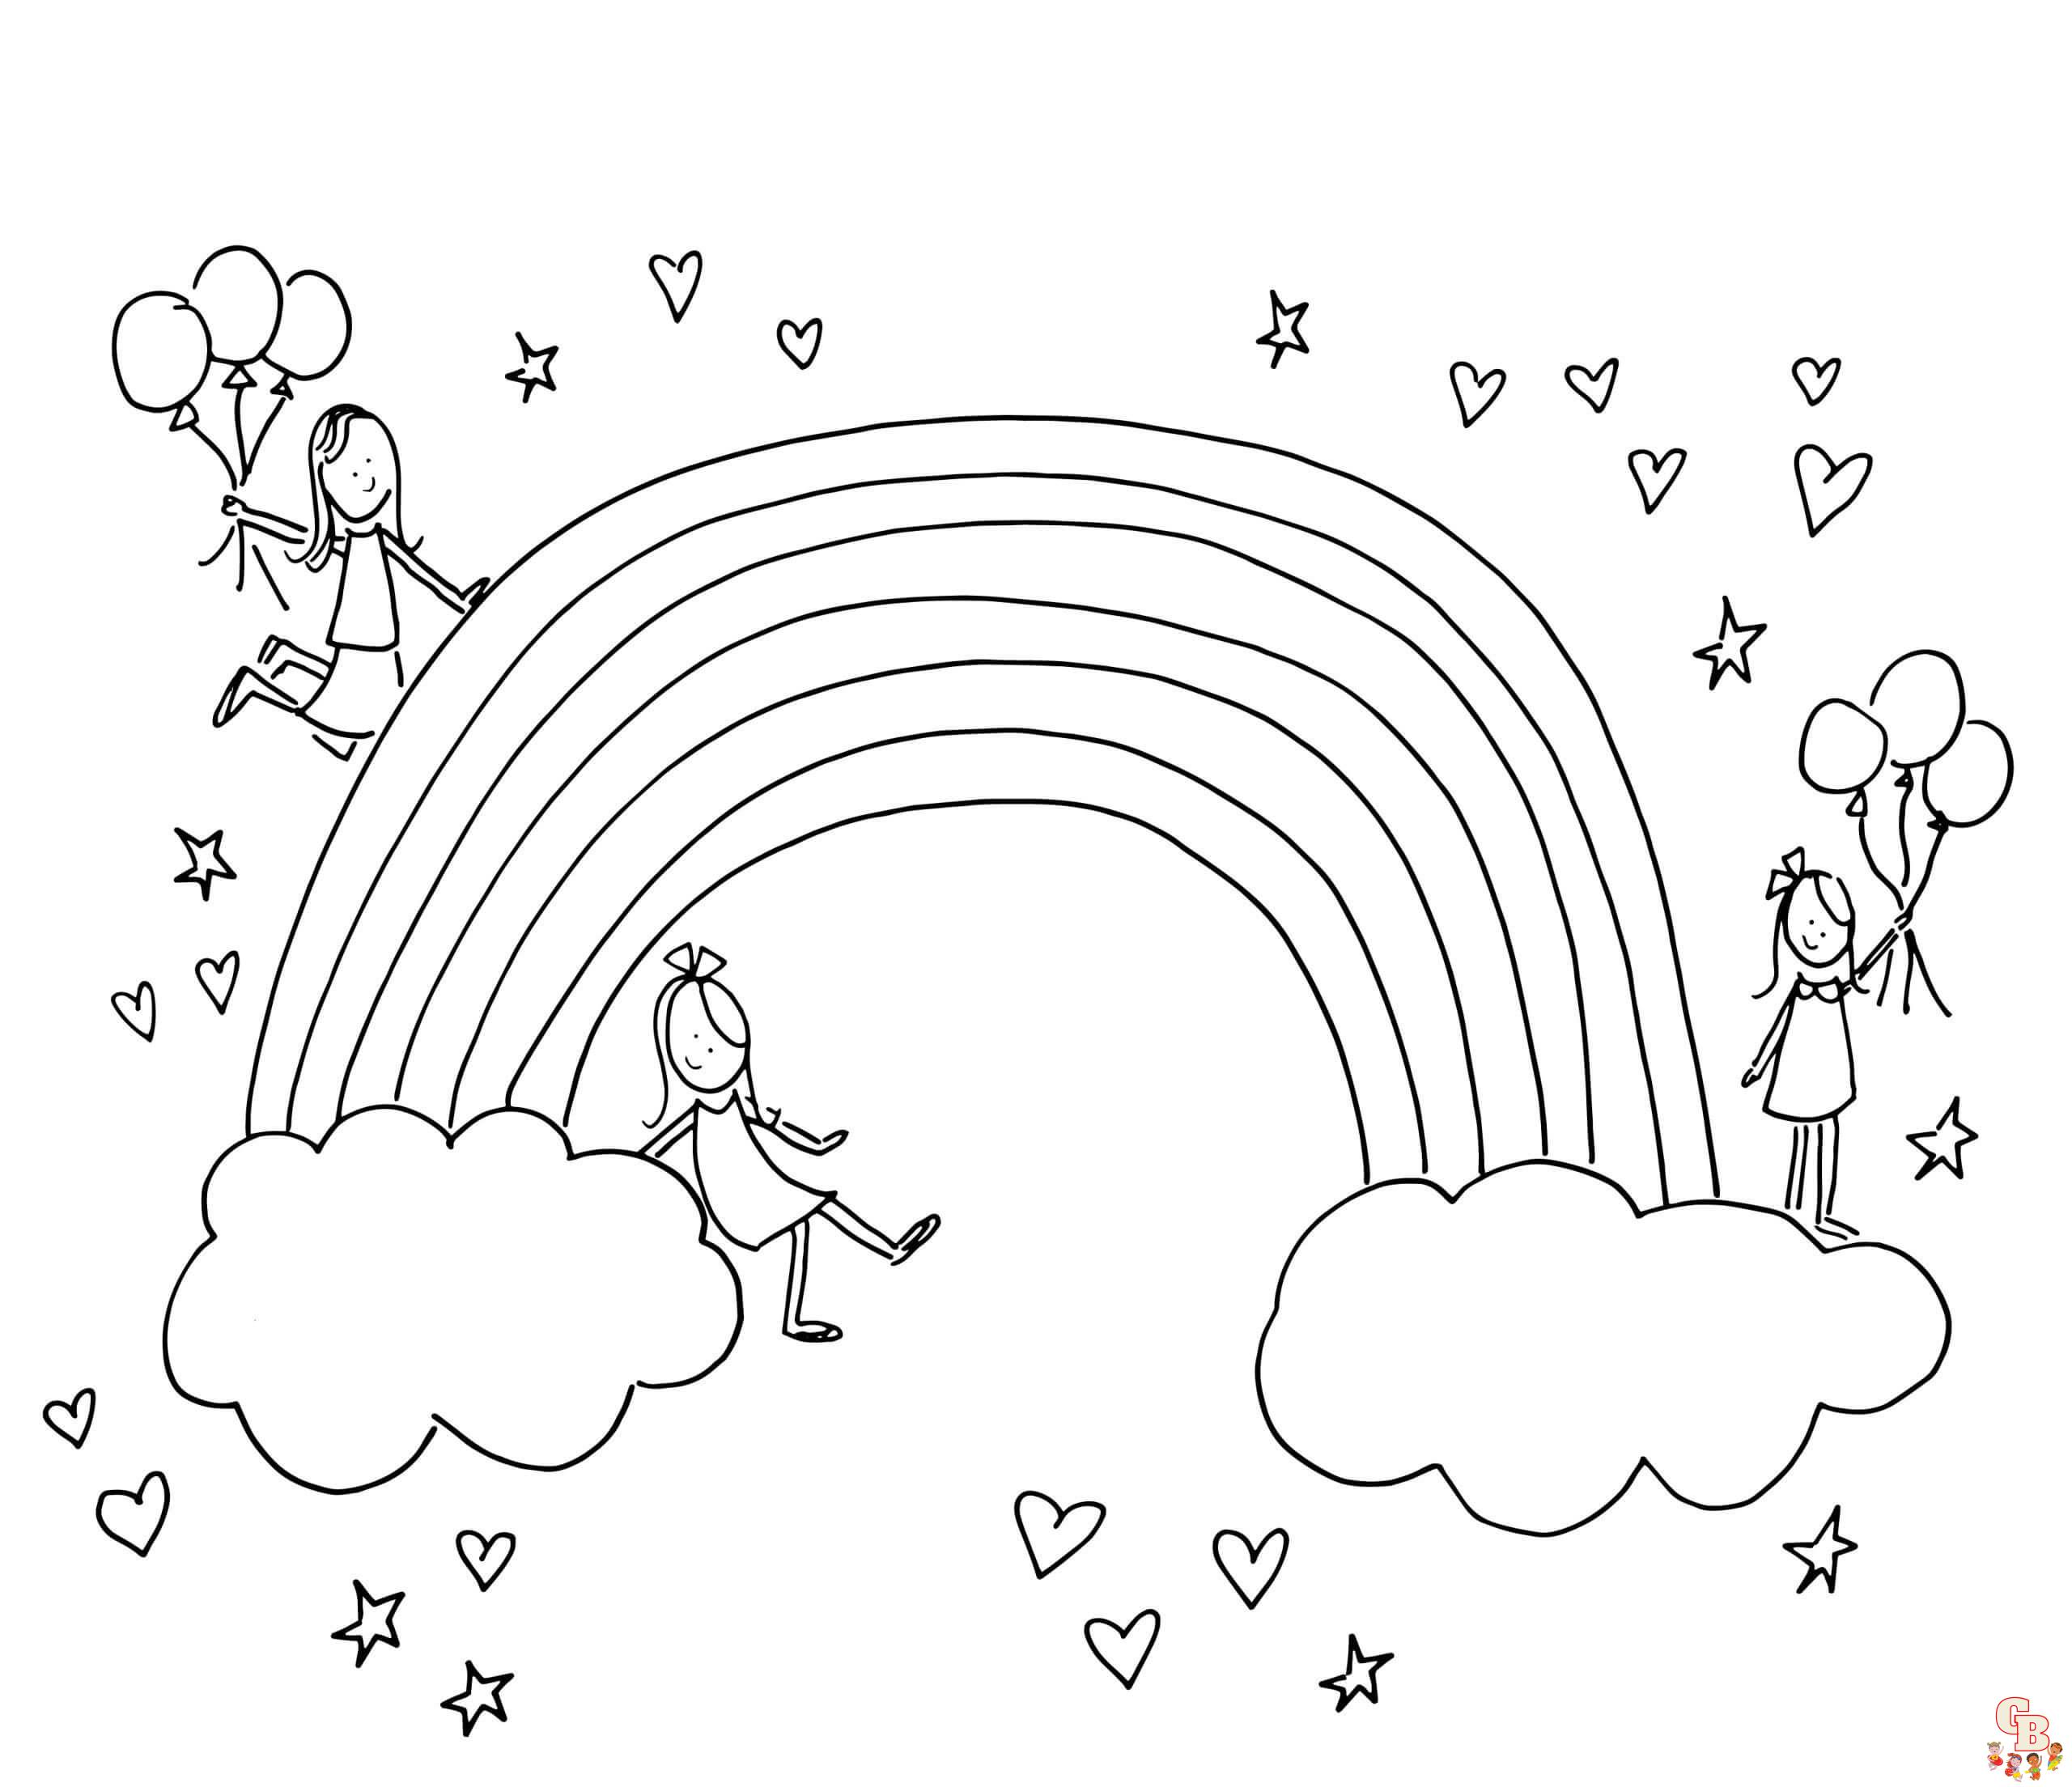 Modèles de coloriage arc-en-ciel gratuits - Pages à colorier d'arc-en-ciel en ligne pour enfants